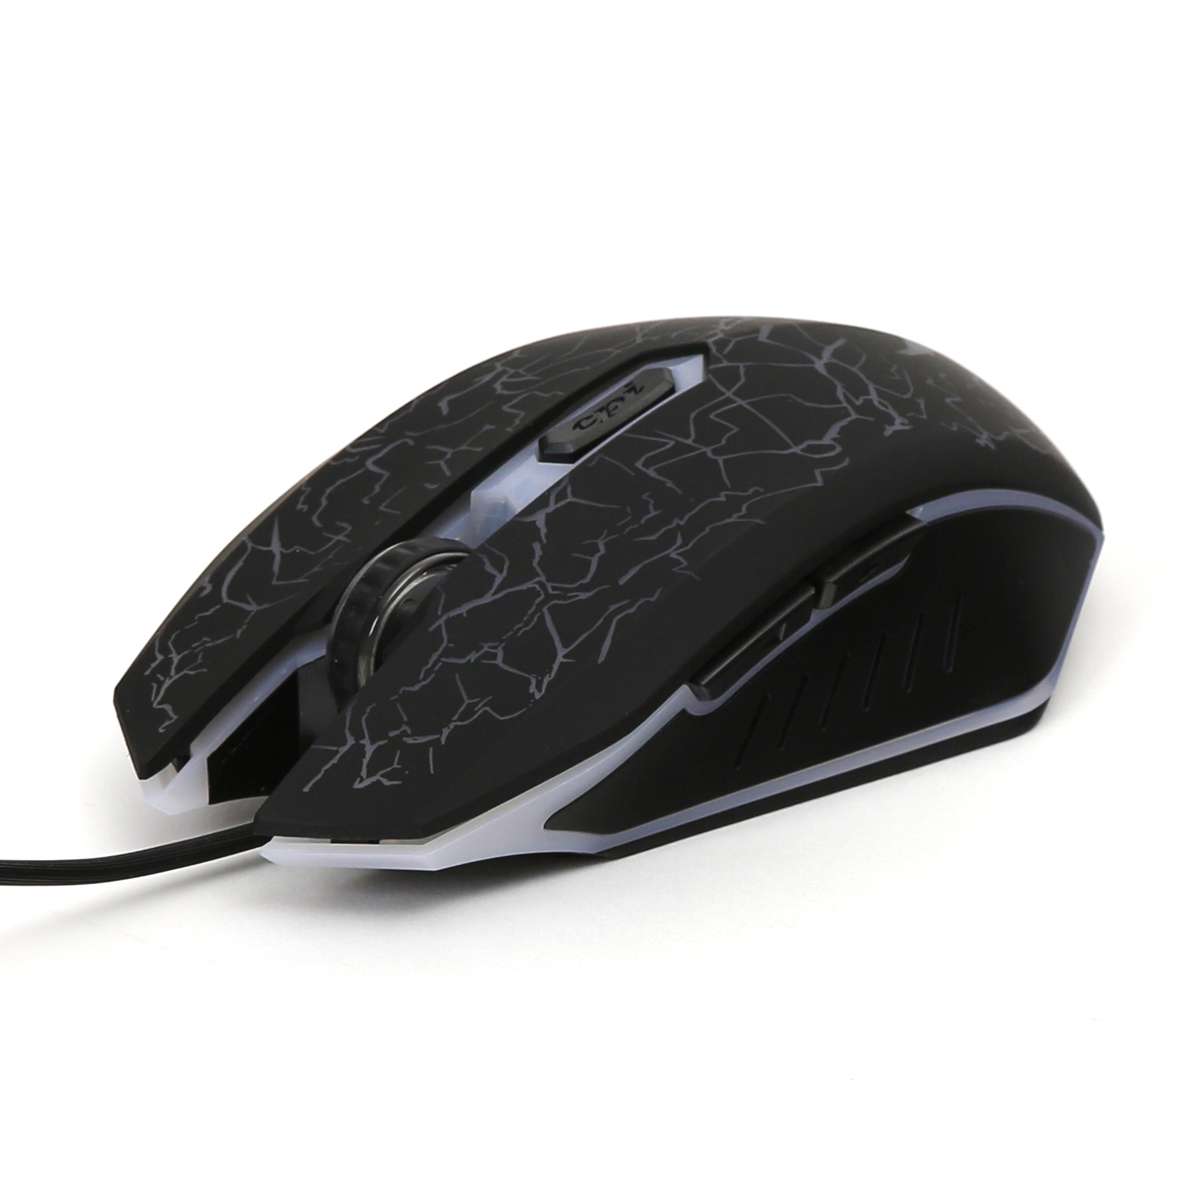 VARR VGM-B02 Gaming Mouse, 800-1200-1600-2400 dpb, LED, black, 1,5m USB cable